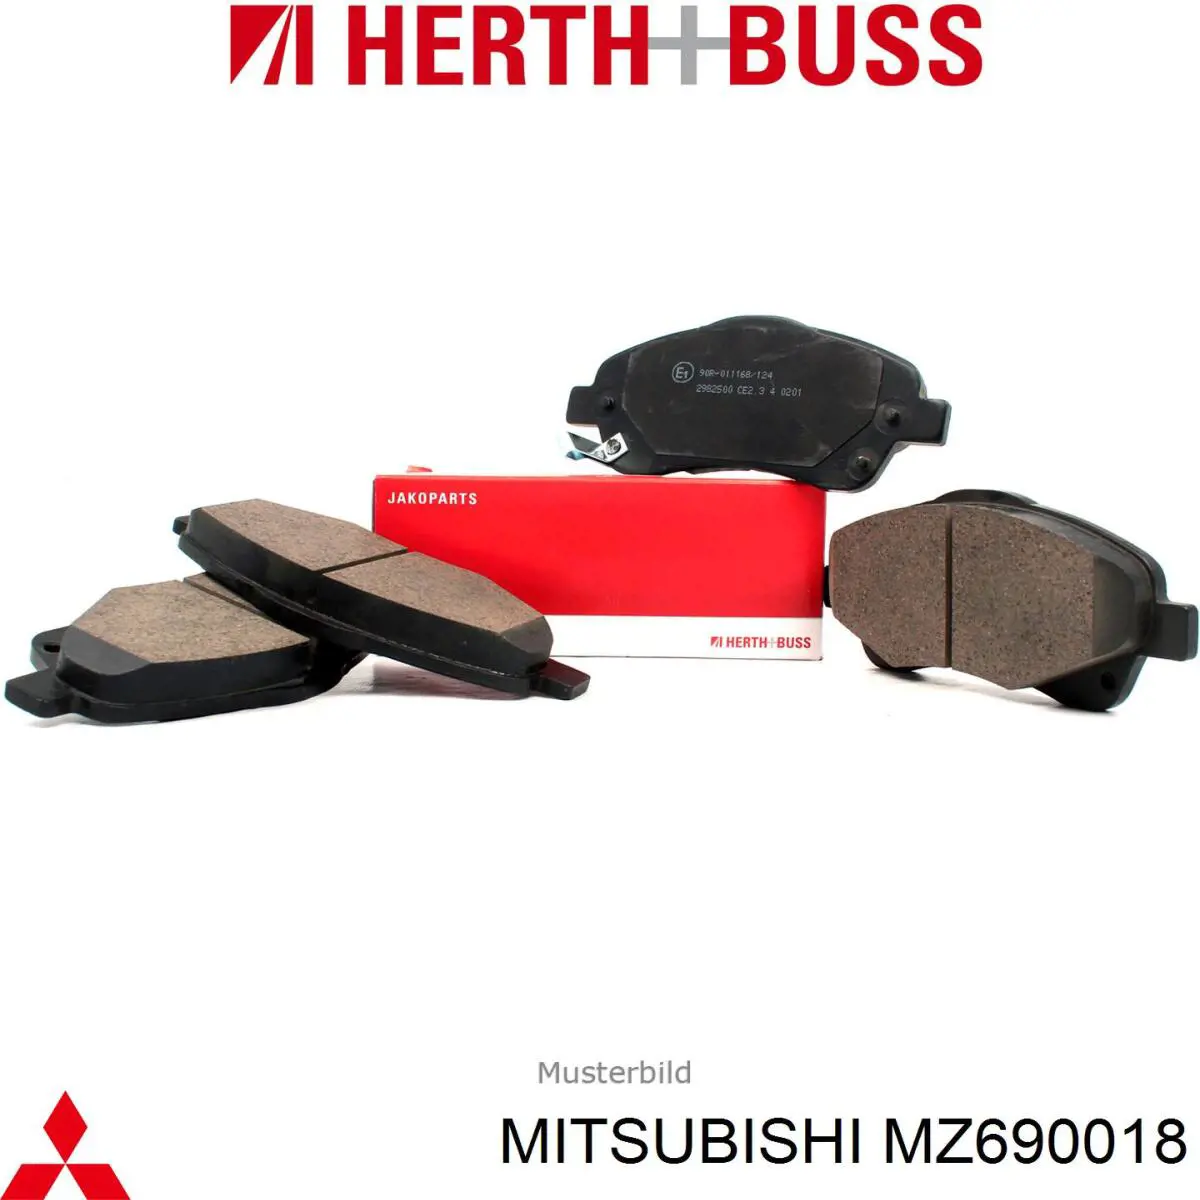 MZ690018 Mitsubishi pastillas de freno delanteras